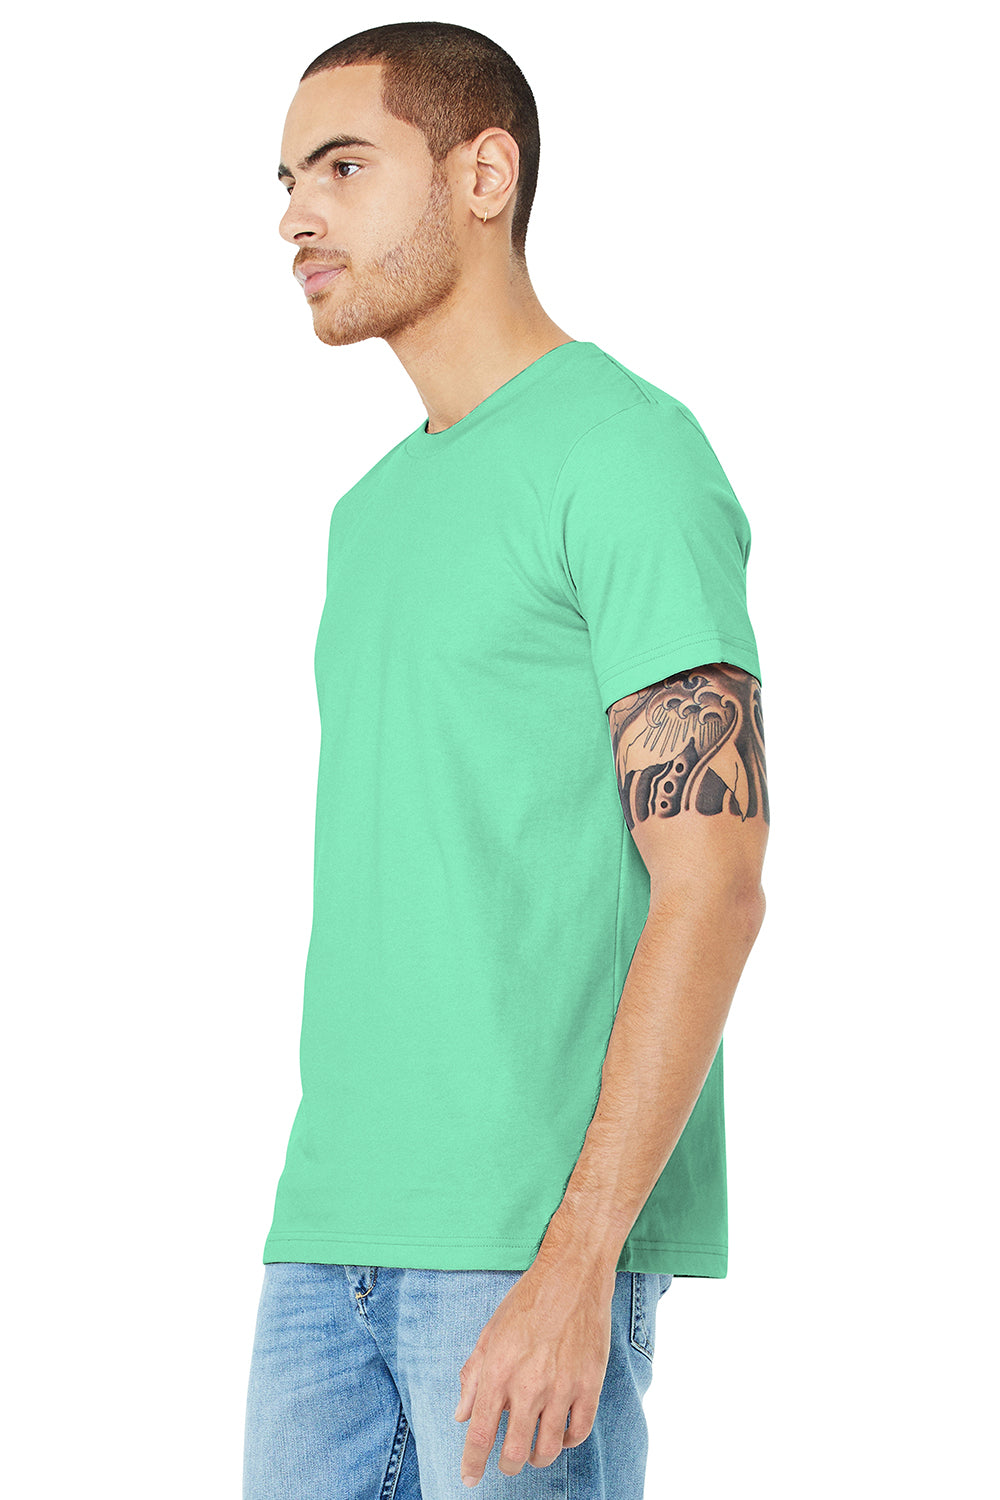 Bella + Canvas BC3001/3001C Mens Jersey Short Sleeve Crewneck T-Shirt Mint Green Model 3Q